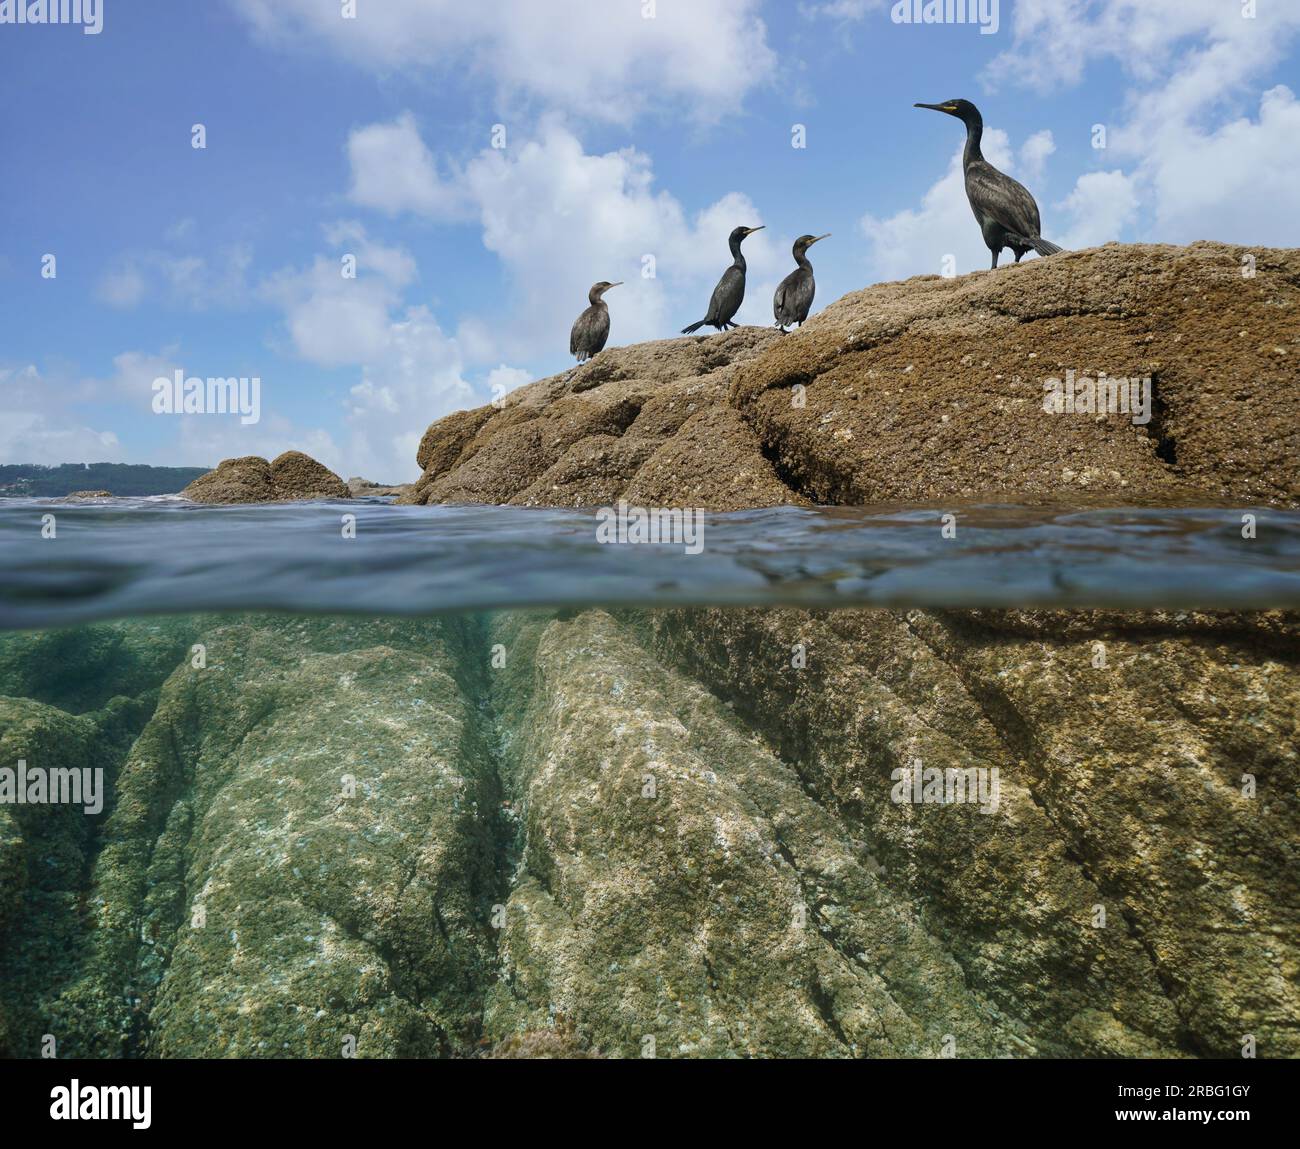 Aves cormoranes en una roca en la orilla del mar, vista dividida sobre y debajo de la superficie del agua, océano Atlántico, España, Galicia Foto de stock